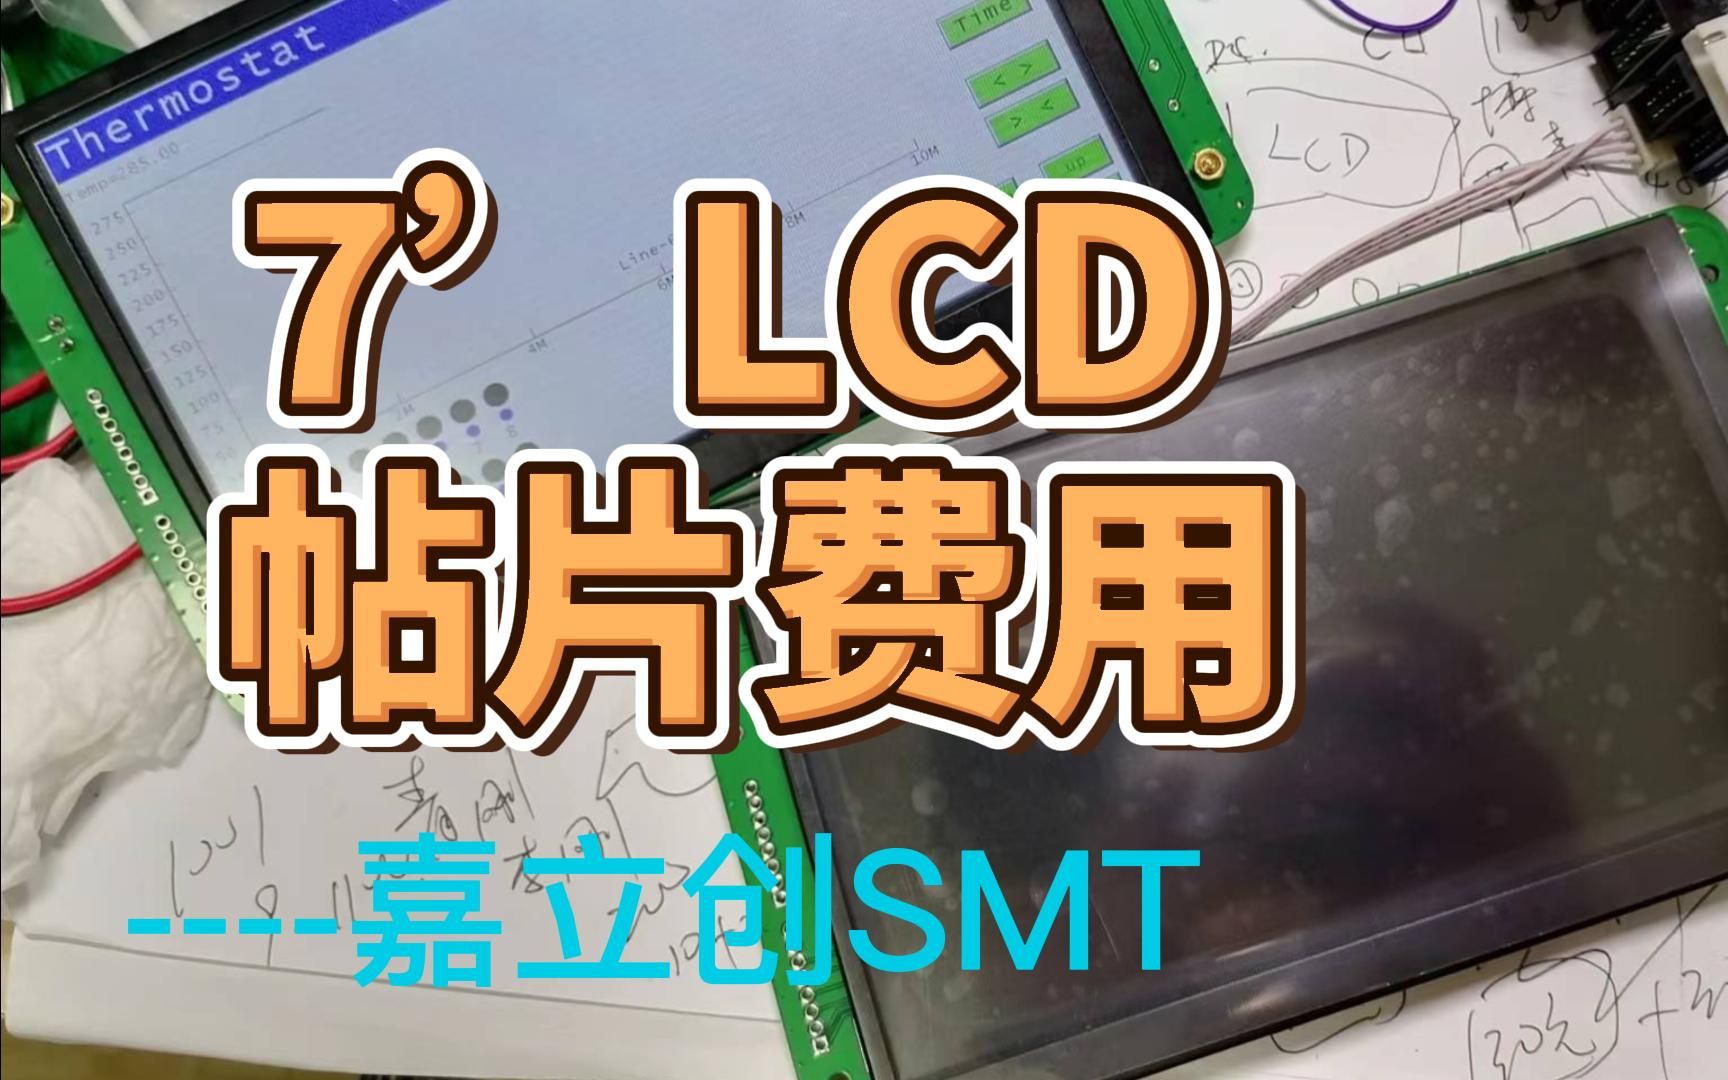 7寸LCD驱动板在嘉立创贴片需要多少钱算下成本免强能接受串口屏开发SWM32S电容触摸GT911